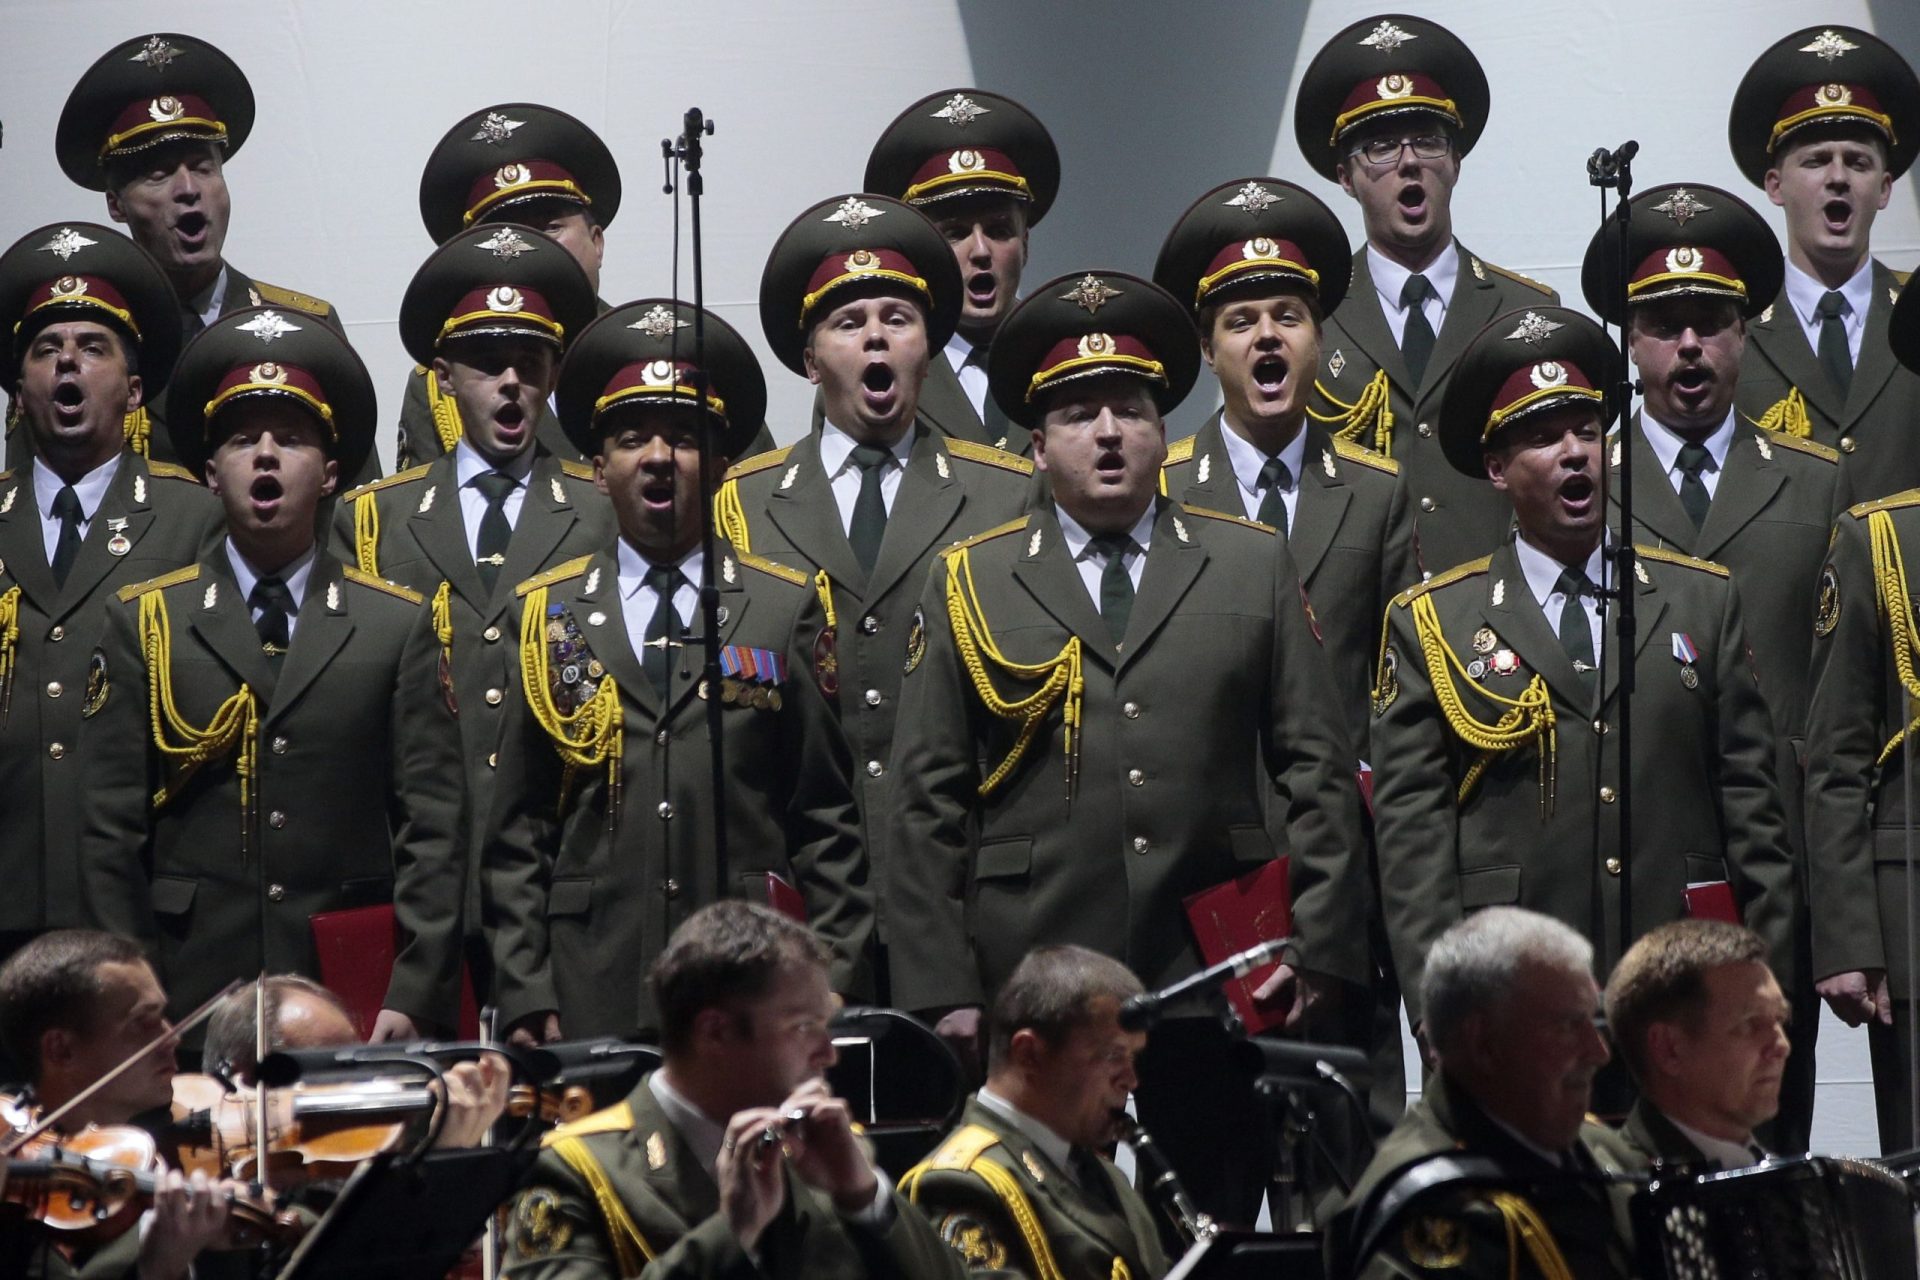 Alexandrov Ensemble. O coro que deu voz ao patriotismo russo [vídeo]